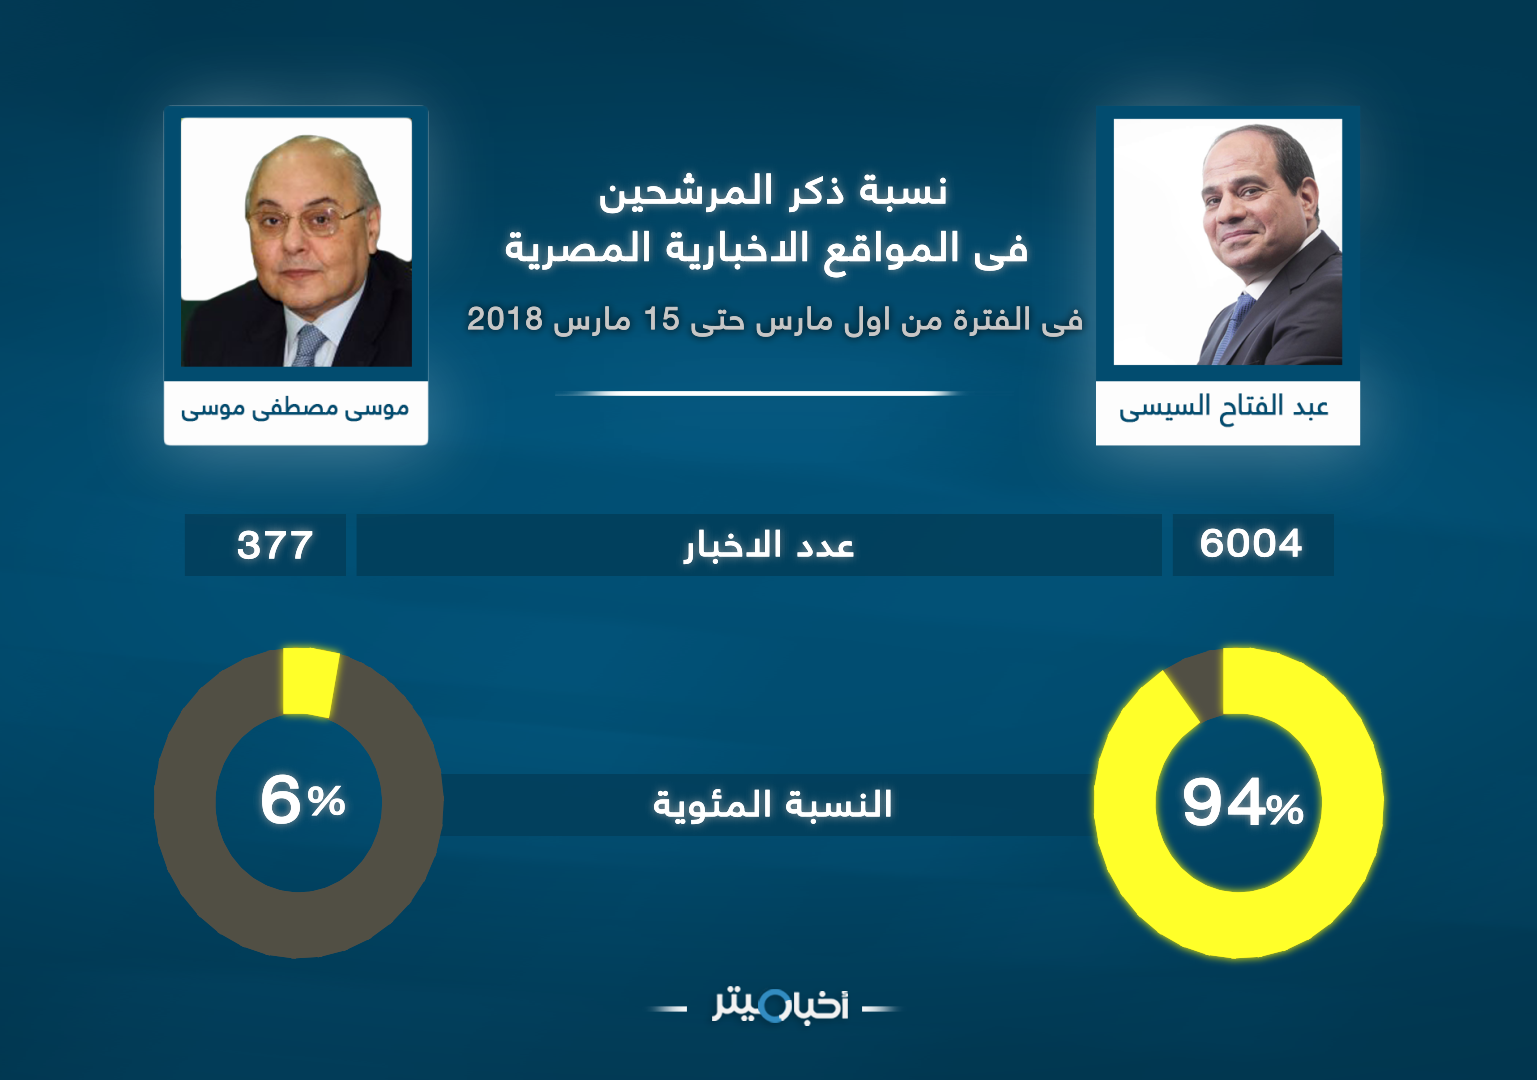 "أخبار ميتر" يرصد استحواذ "السيسي" وموسى" على التغطية الإخبارية للمواقع الصحفية في مصر